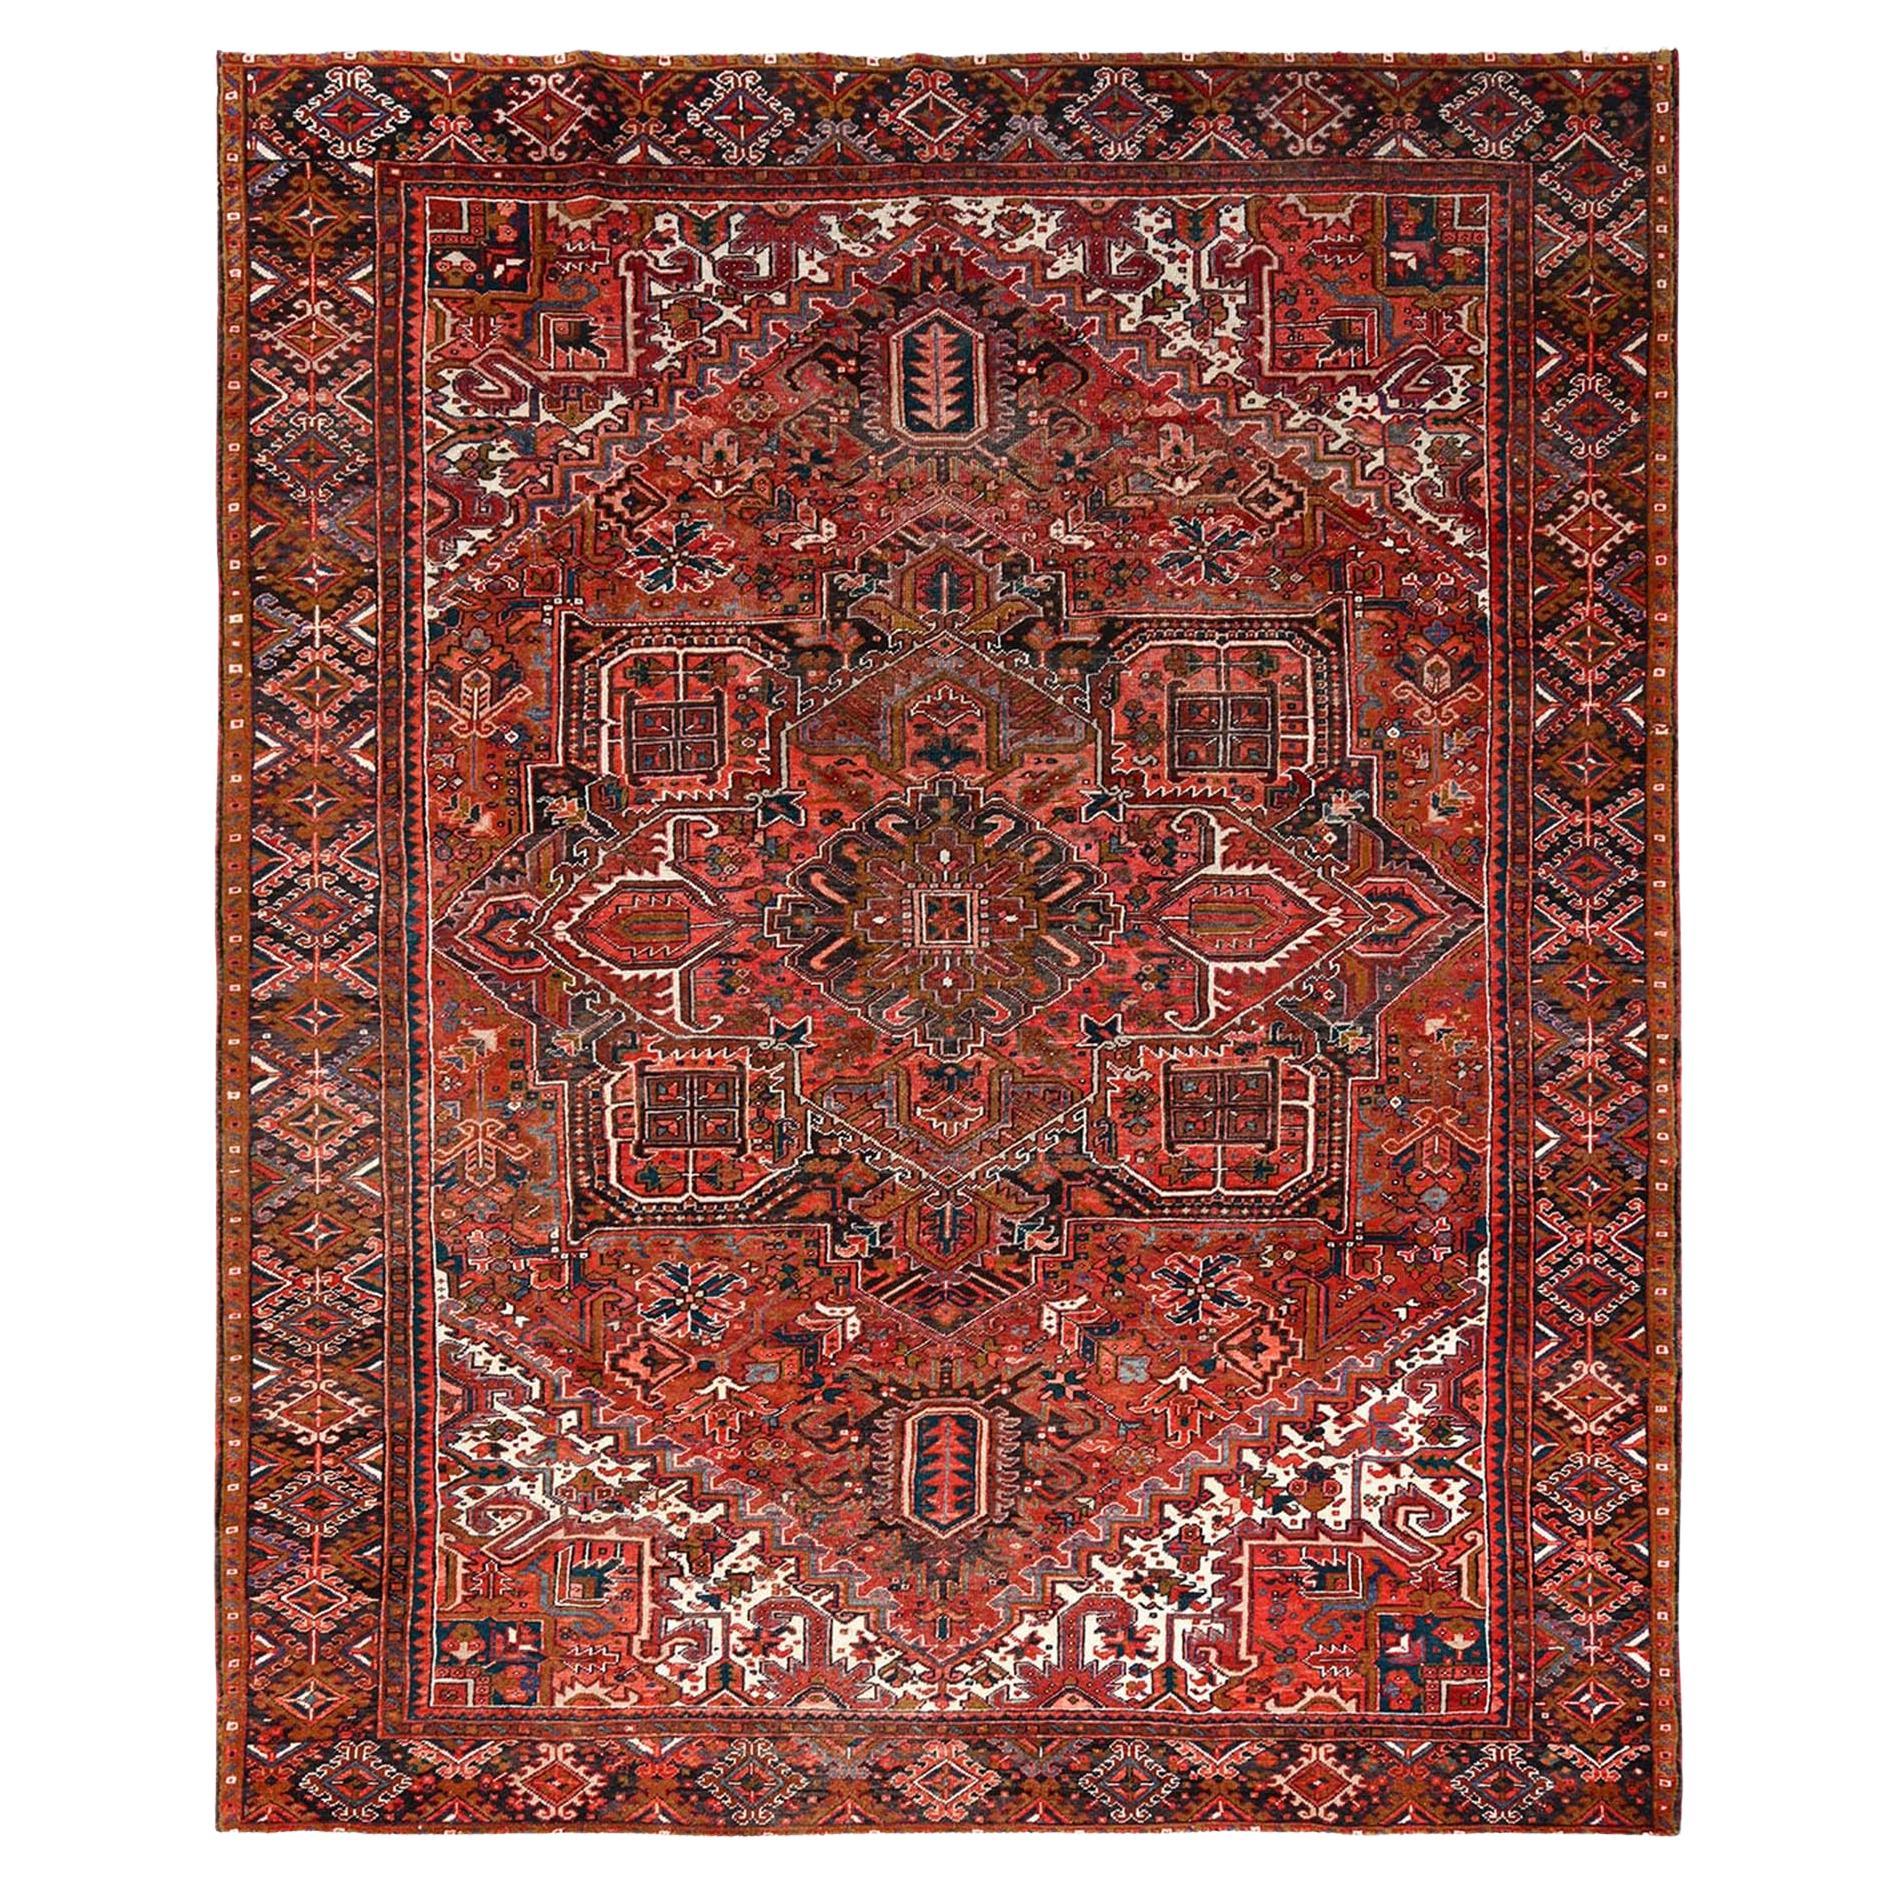 Roter, handgeknüpfter, rustikaler, reiner Vintage-Teppich aus Wolle im böhmischen Stil von Heriz